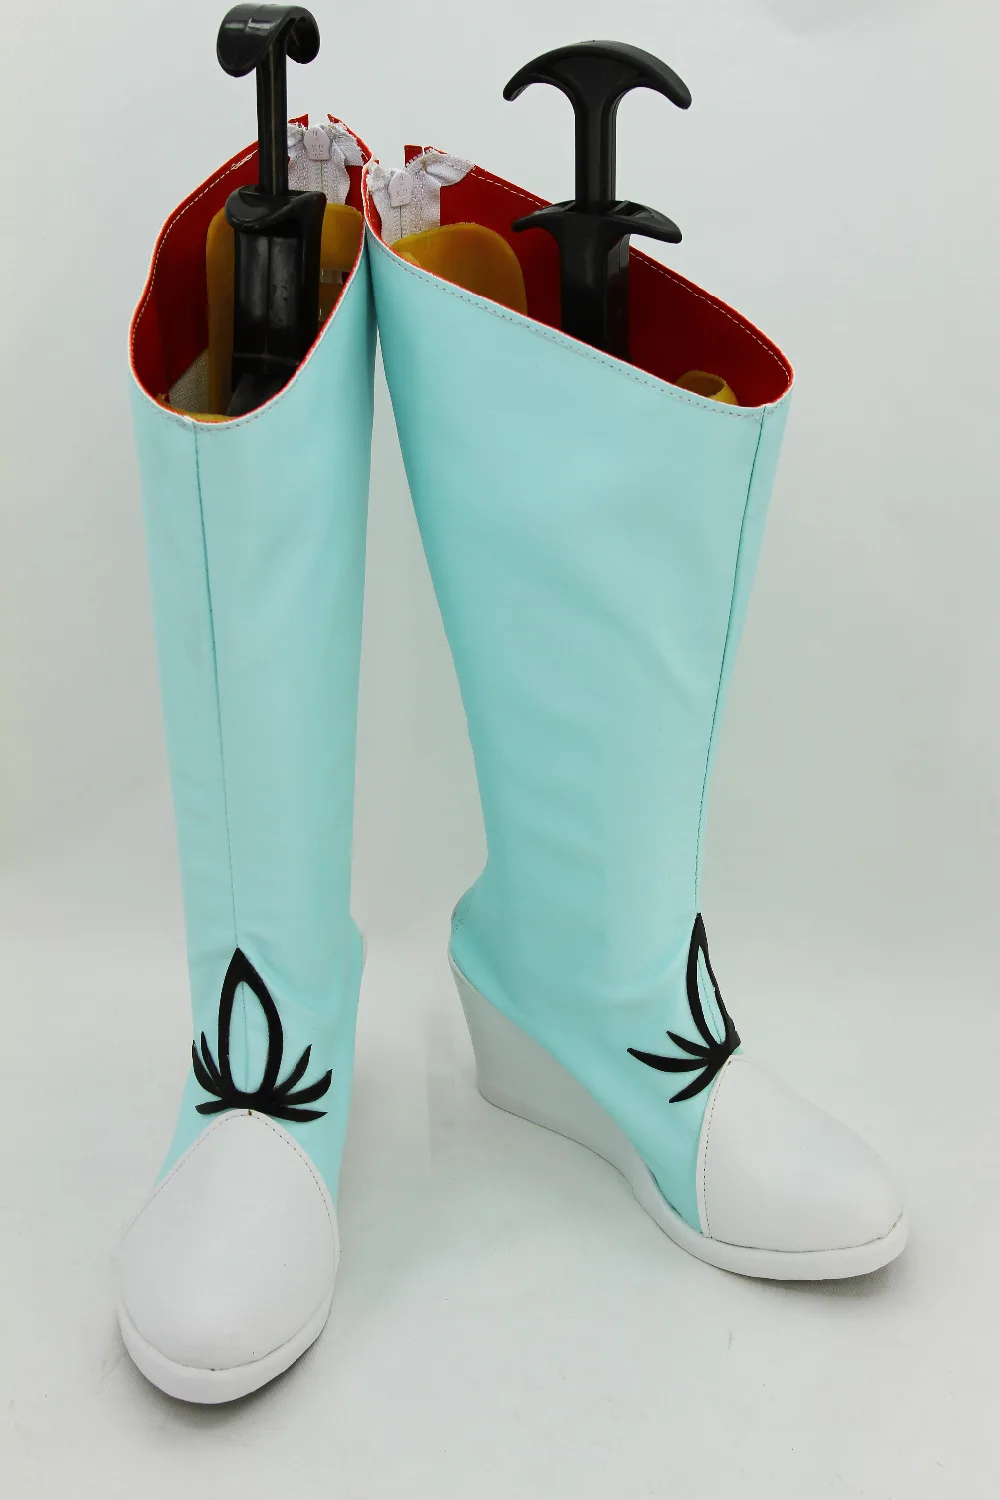 RWBY/Weiss schnee; обувь для костюмированной вечеринки; цвет светло-голубой; обувь